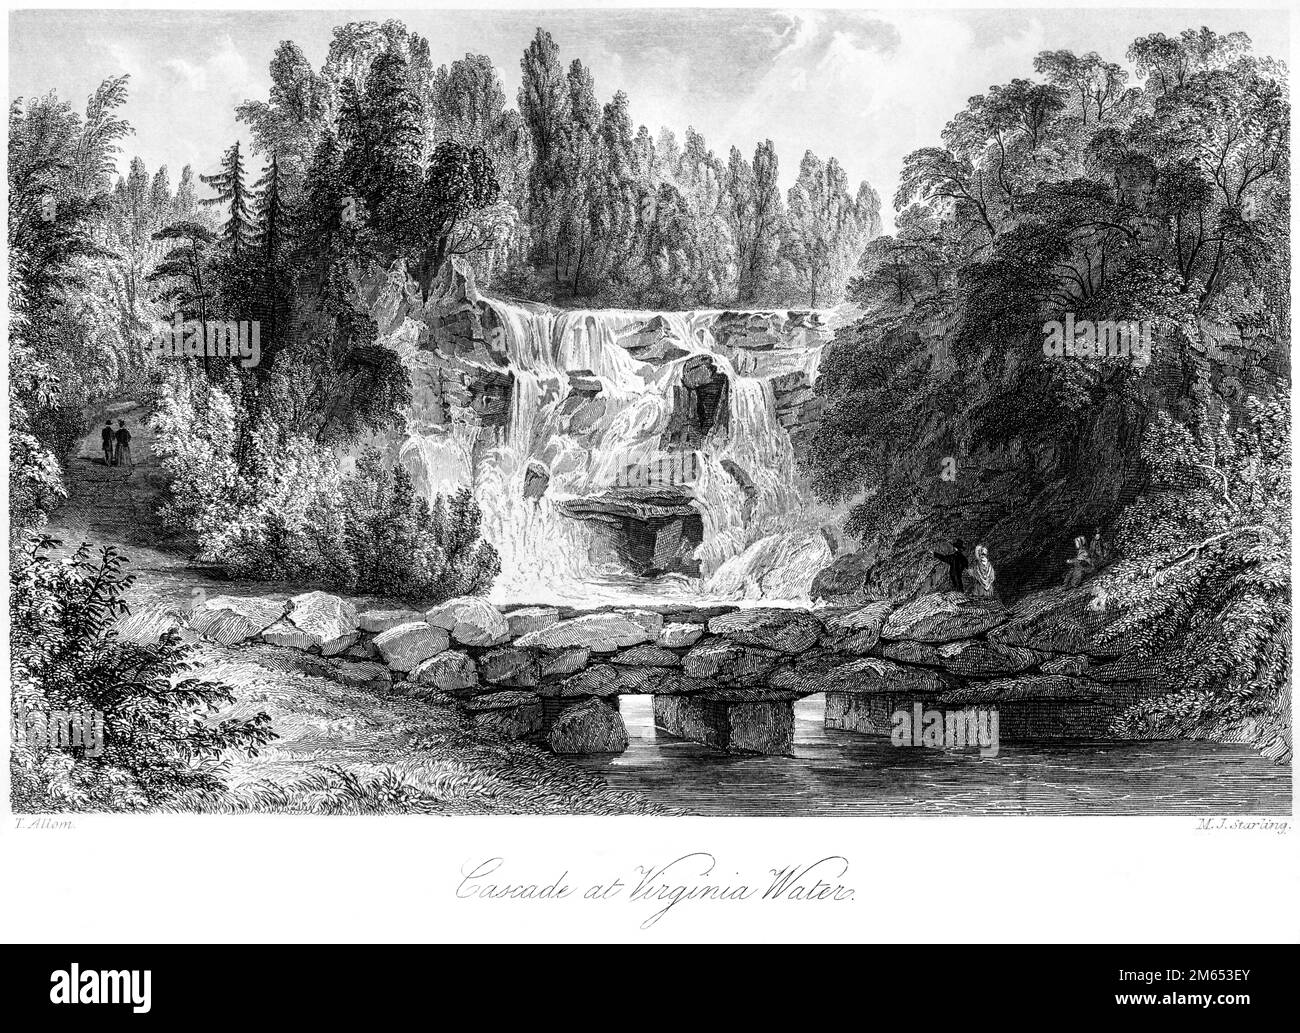 Incisione della Cascade a Virginia Water, Surrey scansiona ad alta risoluzione da un libro stampato nel 1850. Creduto libero da copyright. Foto Stock